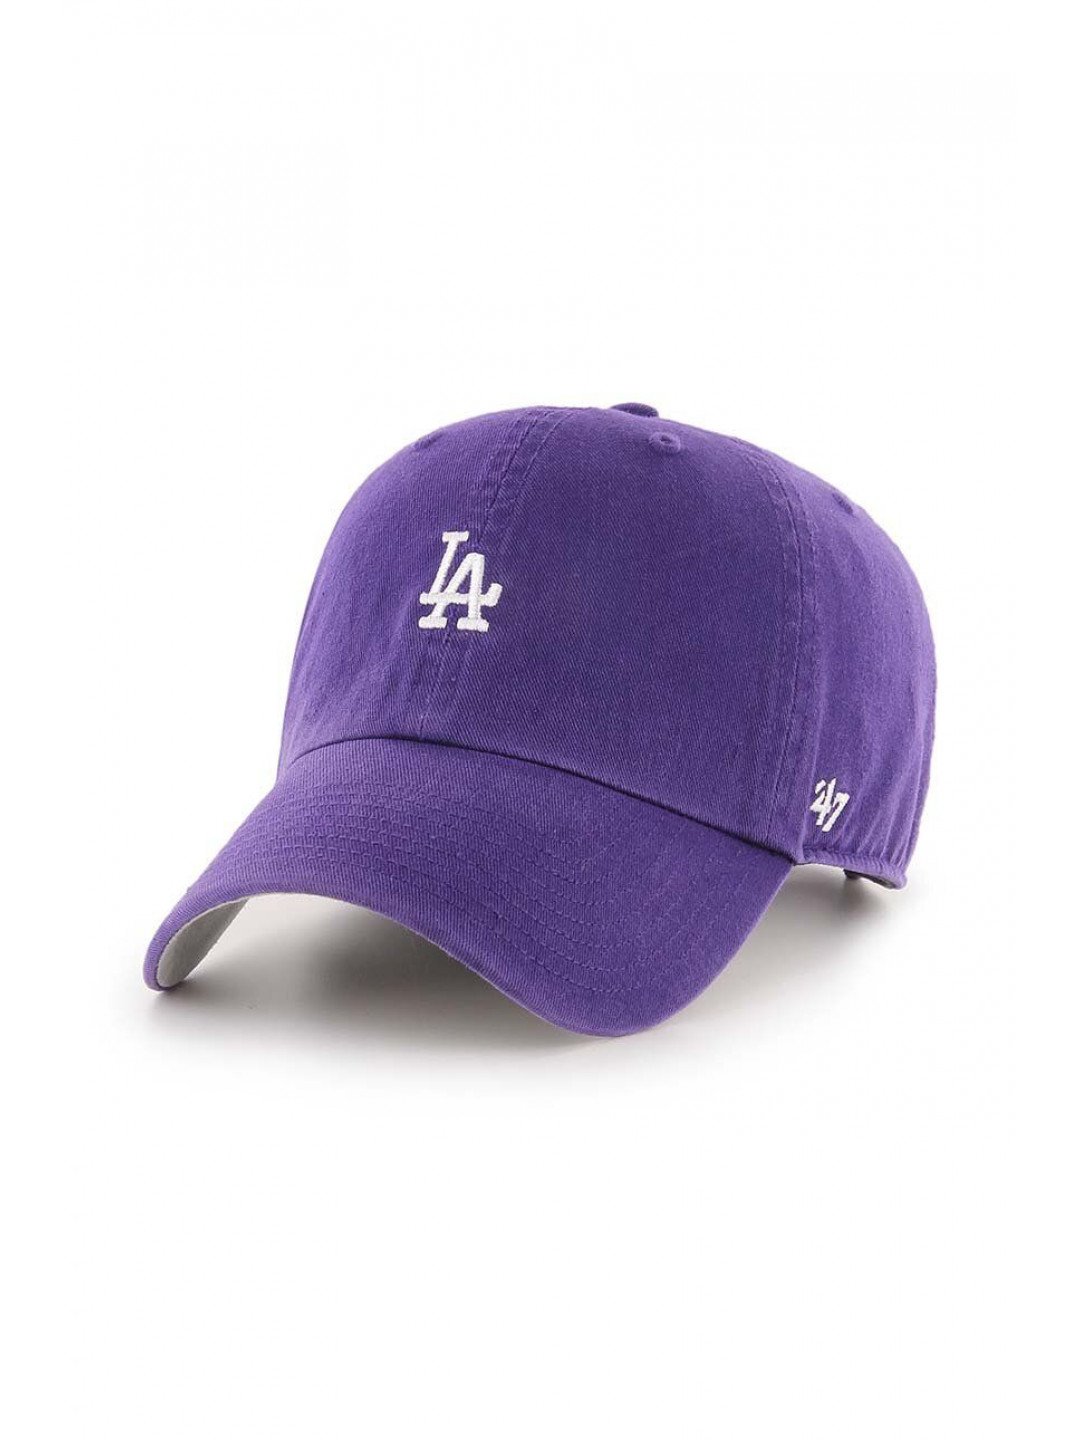 Bavlněná baseballová čepice 47brand MLB Los Angeles Dodgers fialová barva s aplikací